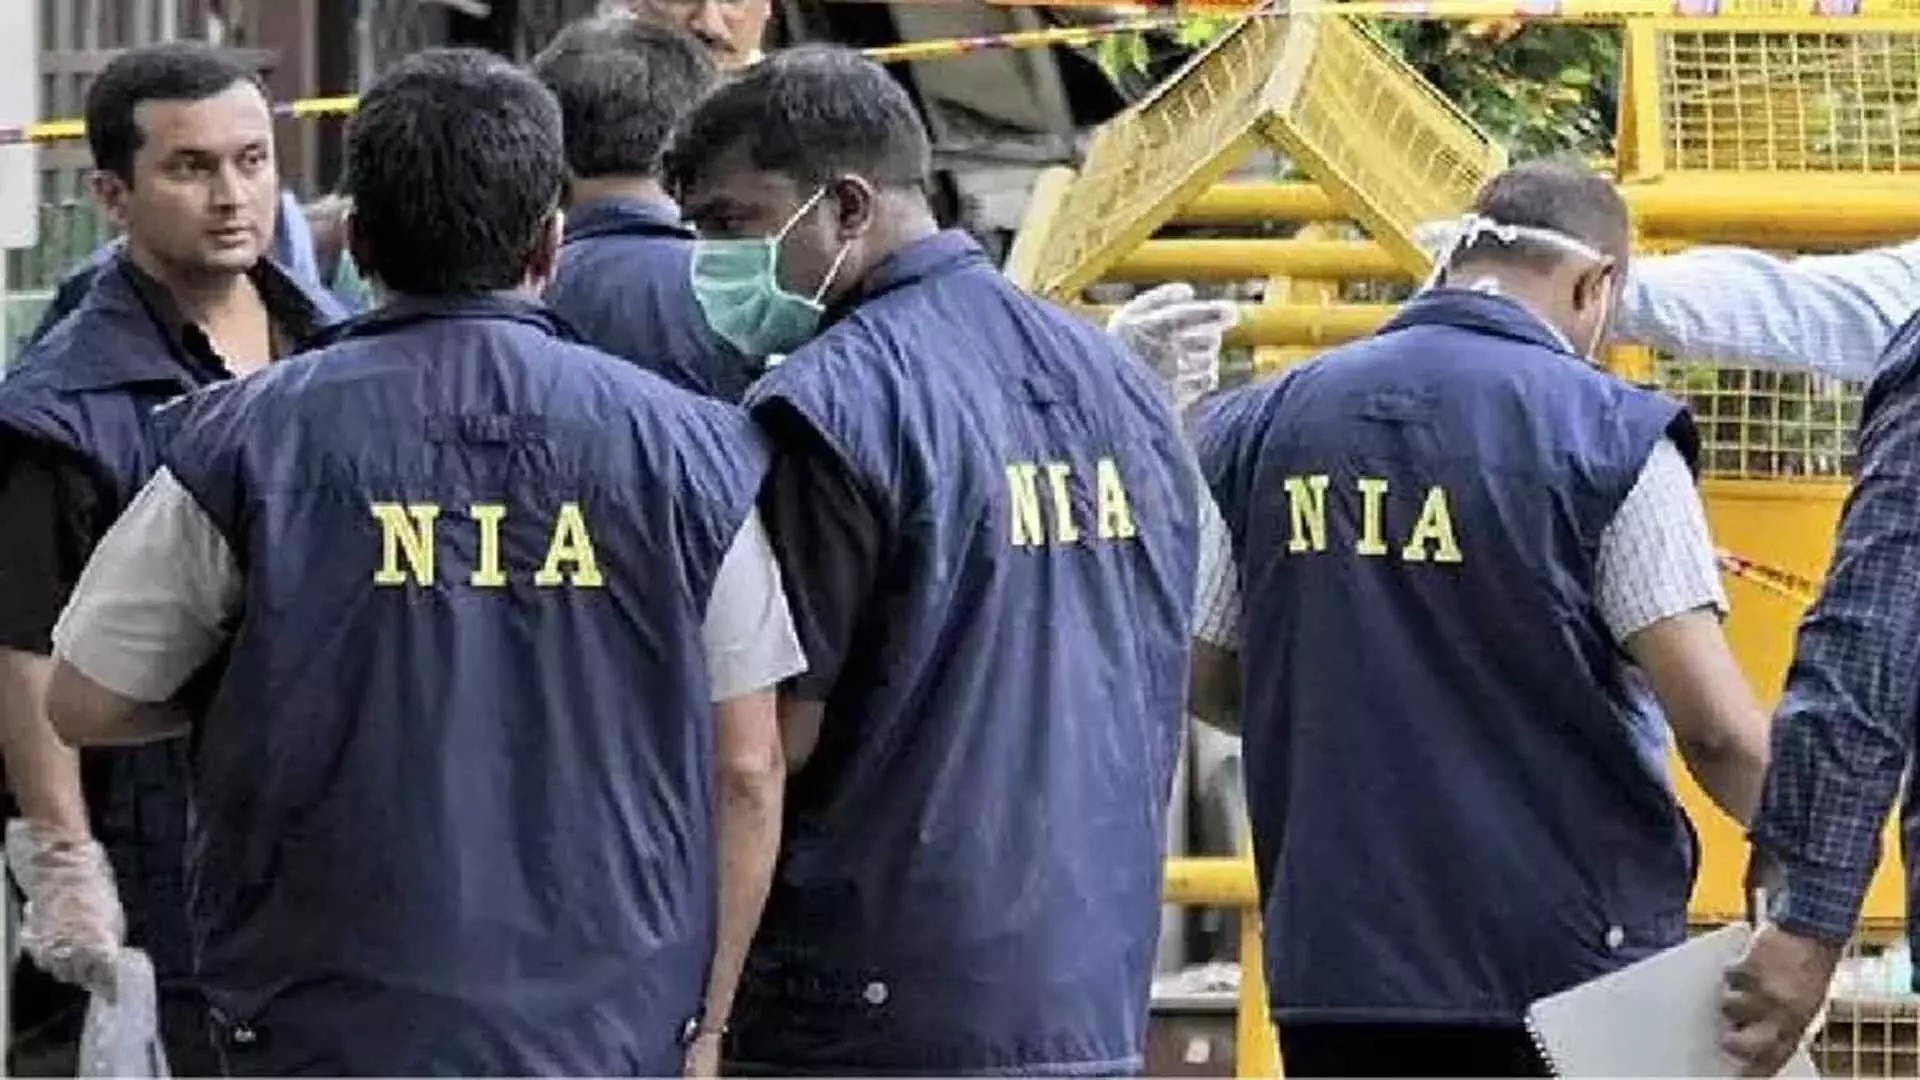 NIA ने चेन्नई पुलिस से कट्टरपंथीकरण मामले की जांच का जिम्मा संभाला